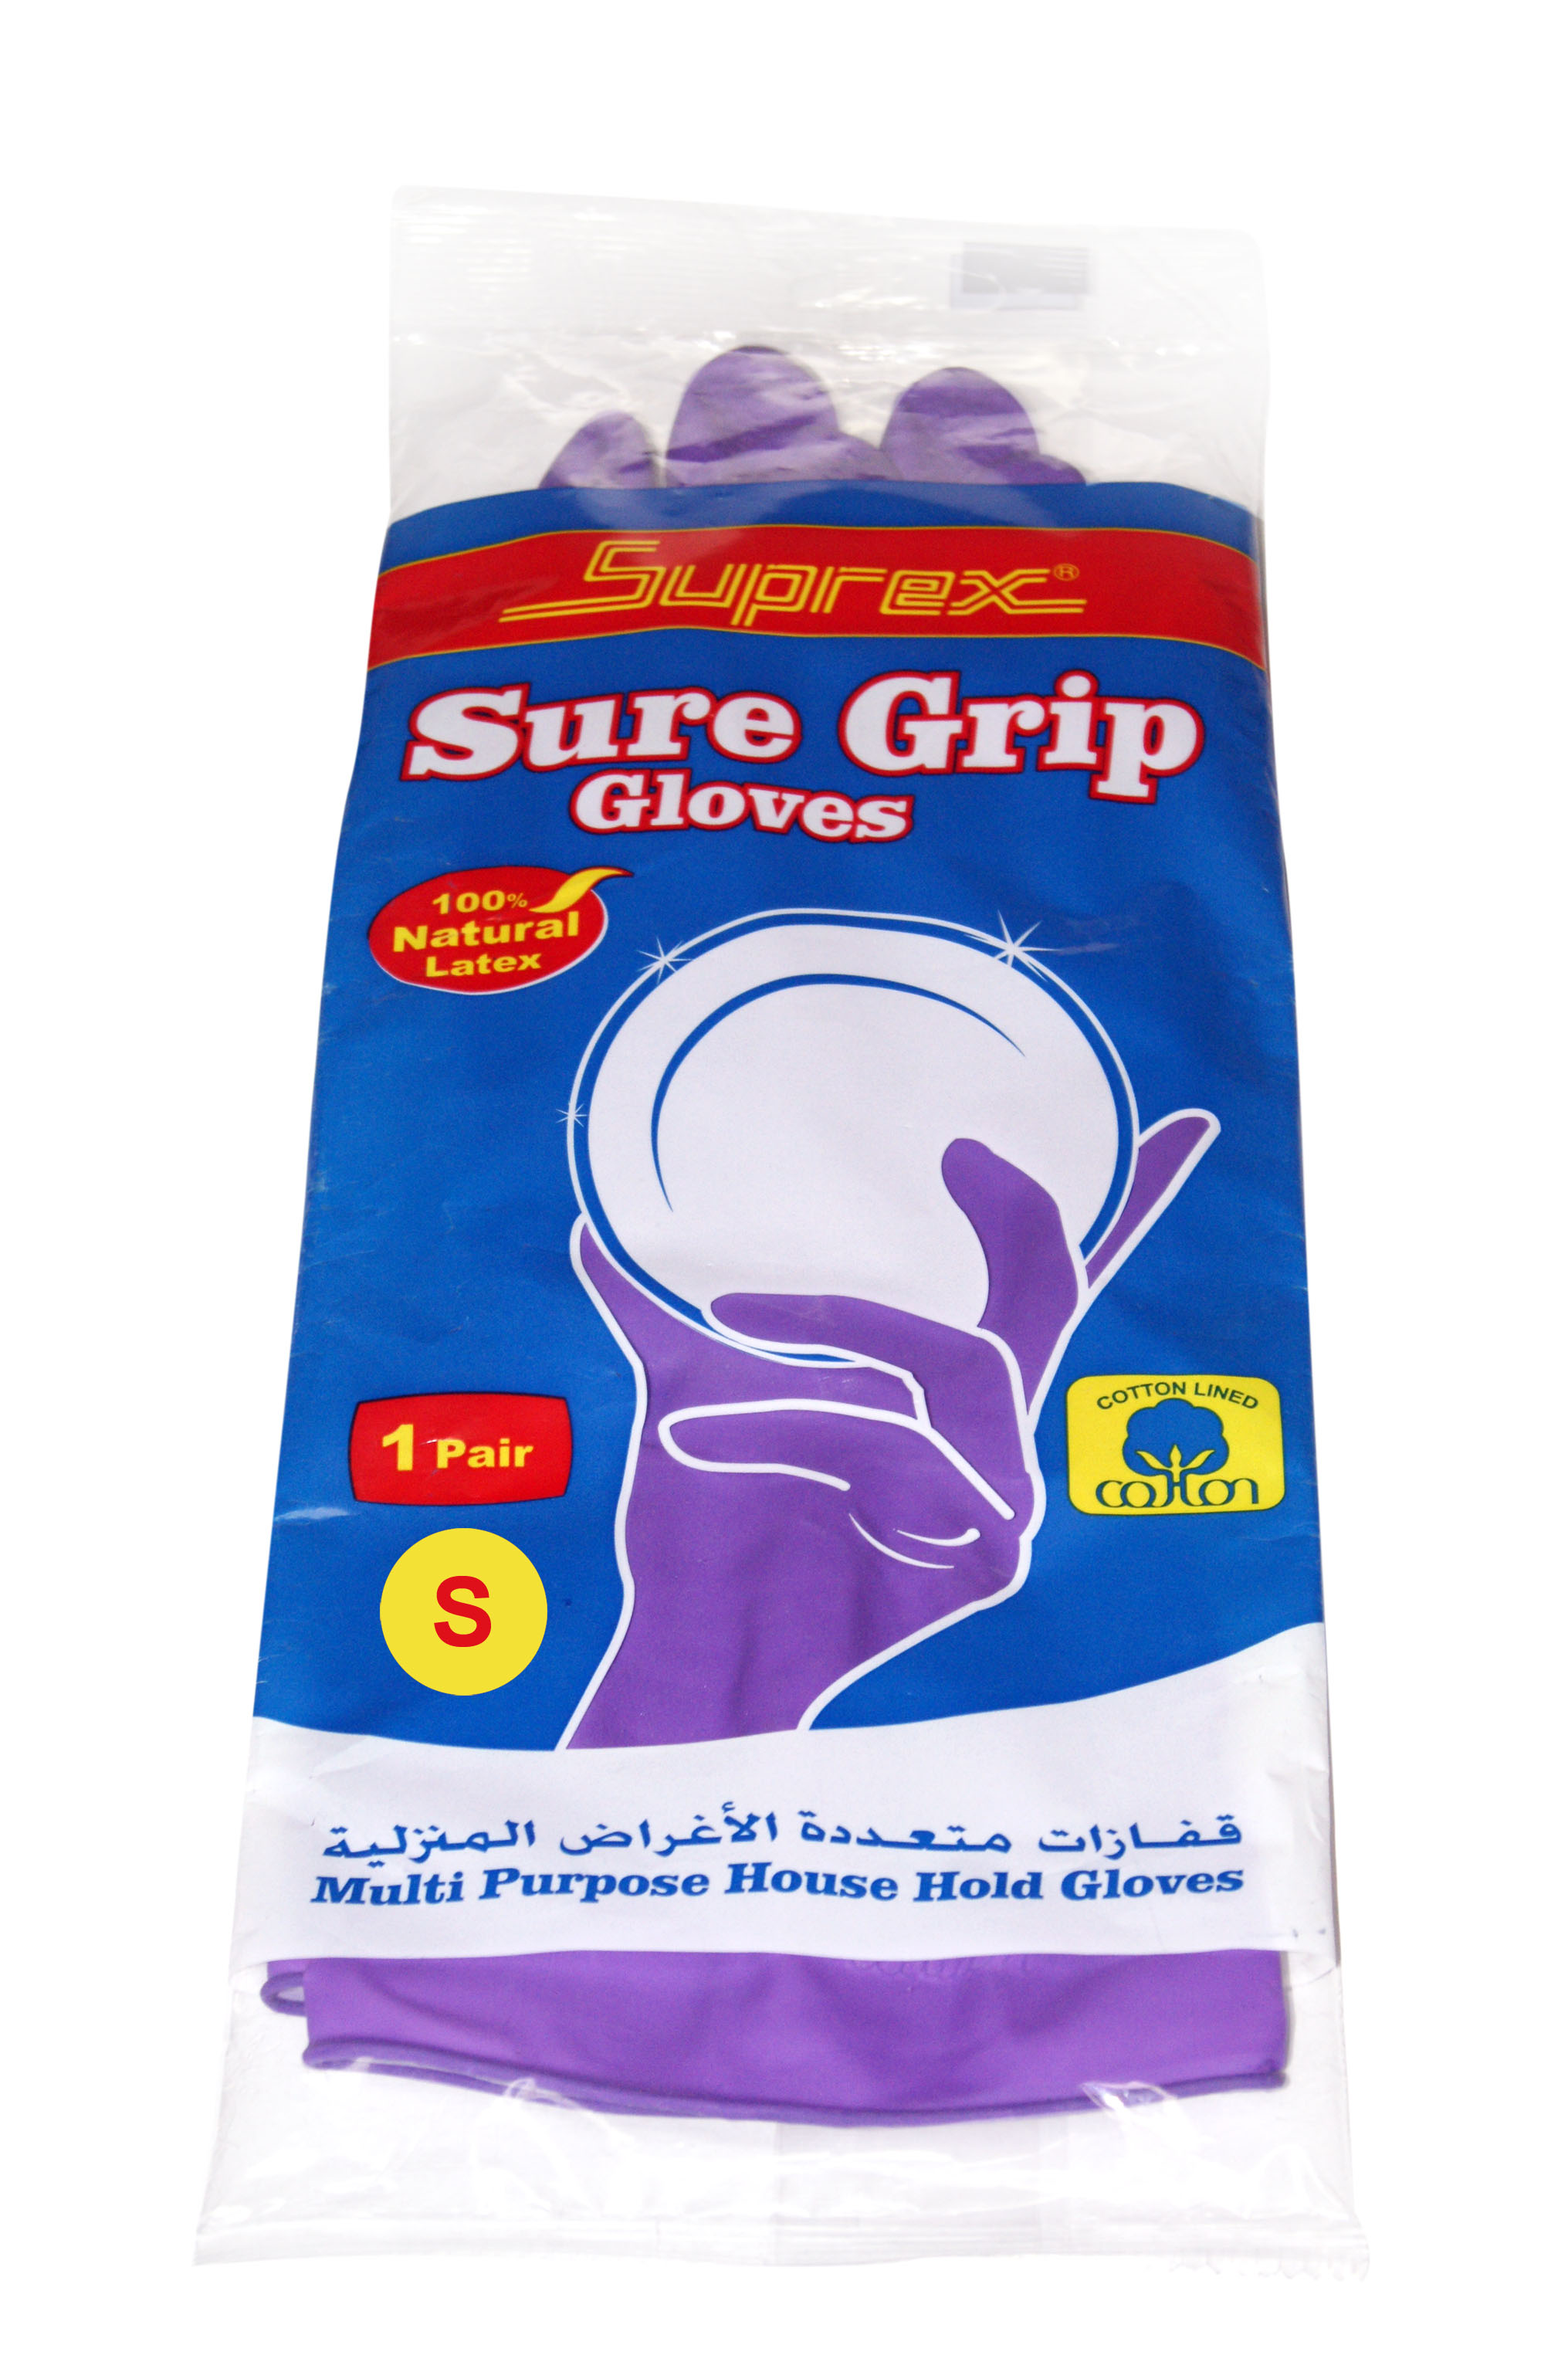 Sure Grip Glove